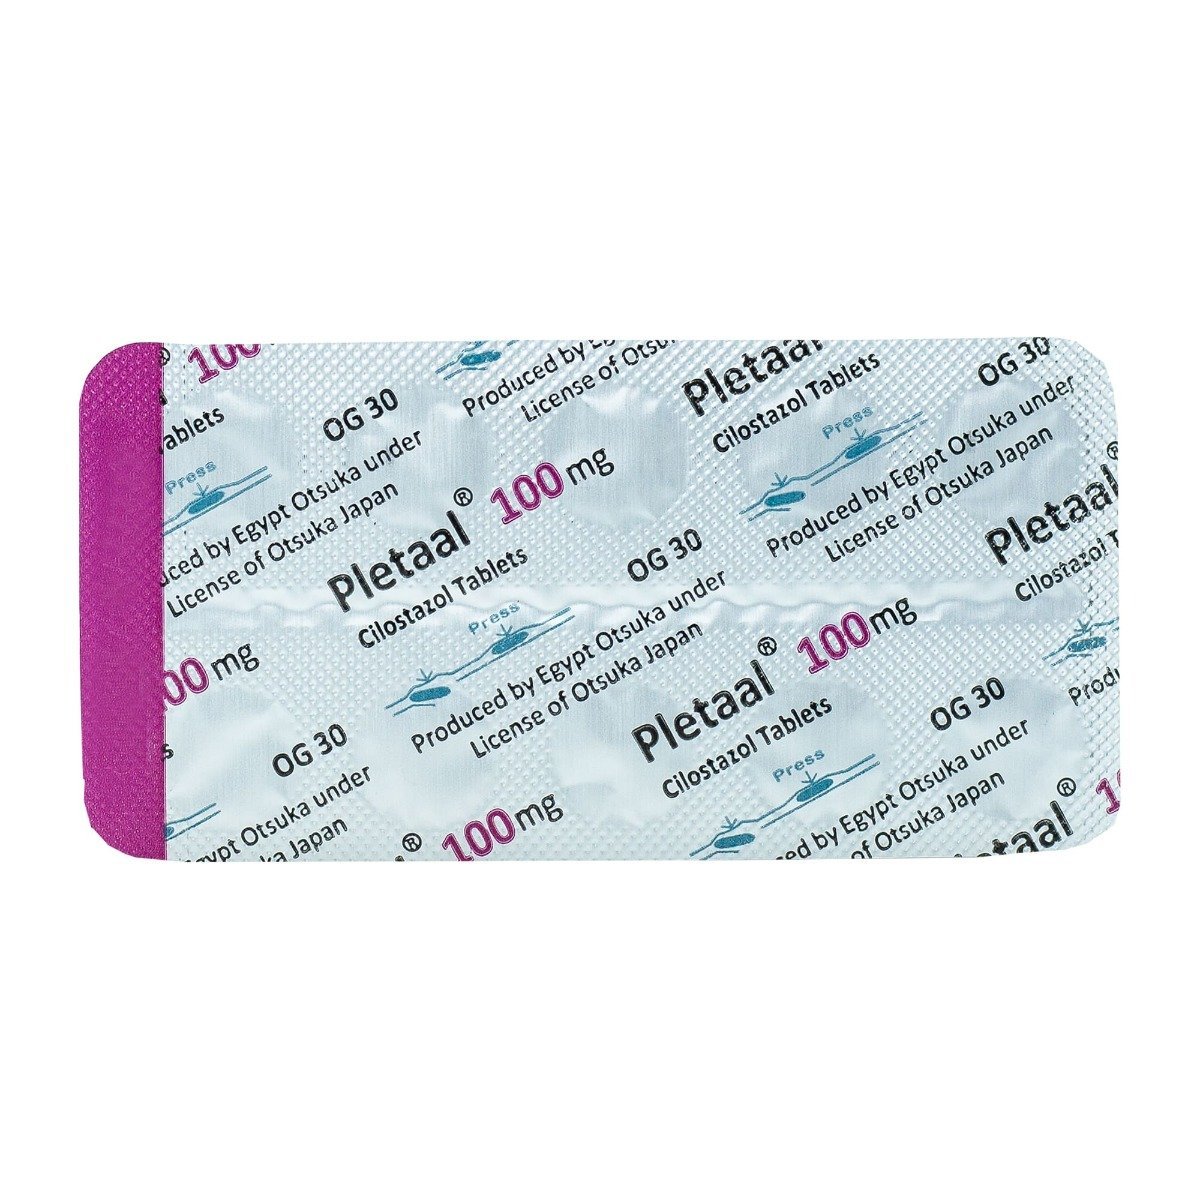 Pletaal 100 mg - 20 Tablets - Bloom Pharmacy